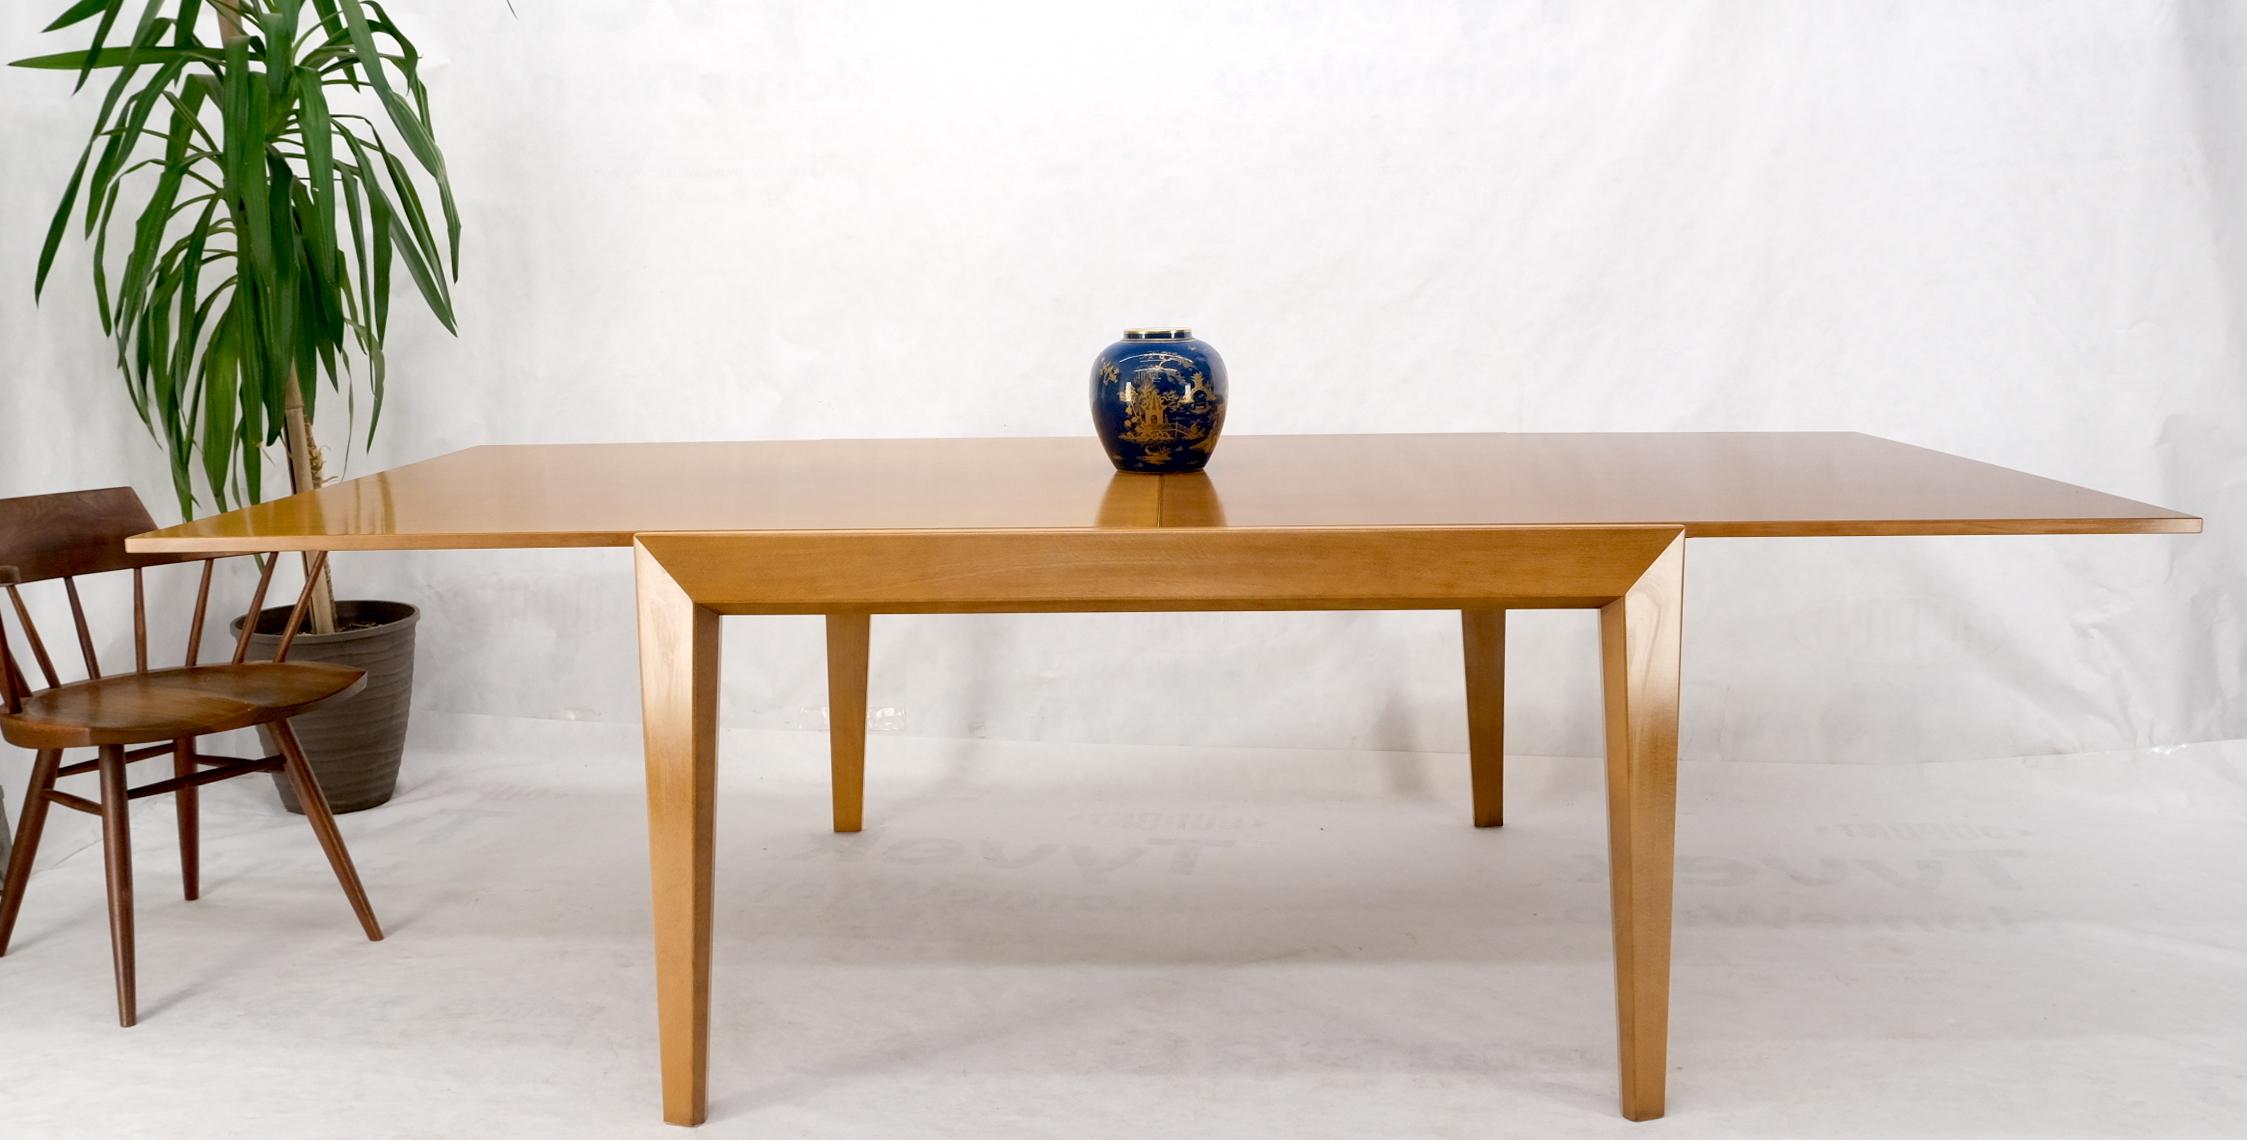 Cassina large square flip top expandable dining conference table blond birch.
La grande table carrée se transforme en table de salle à manger ou de conférence rectangulaire de 100